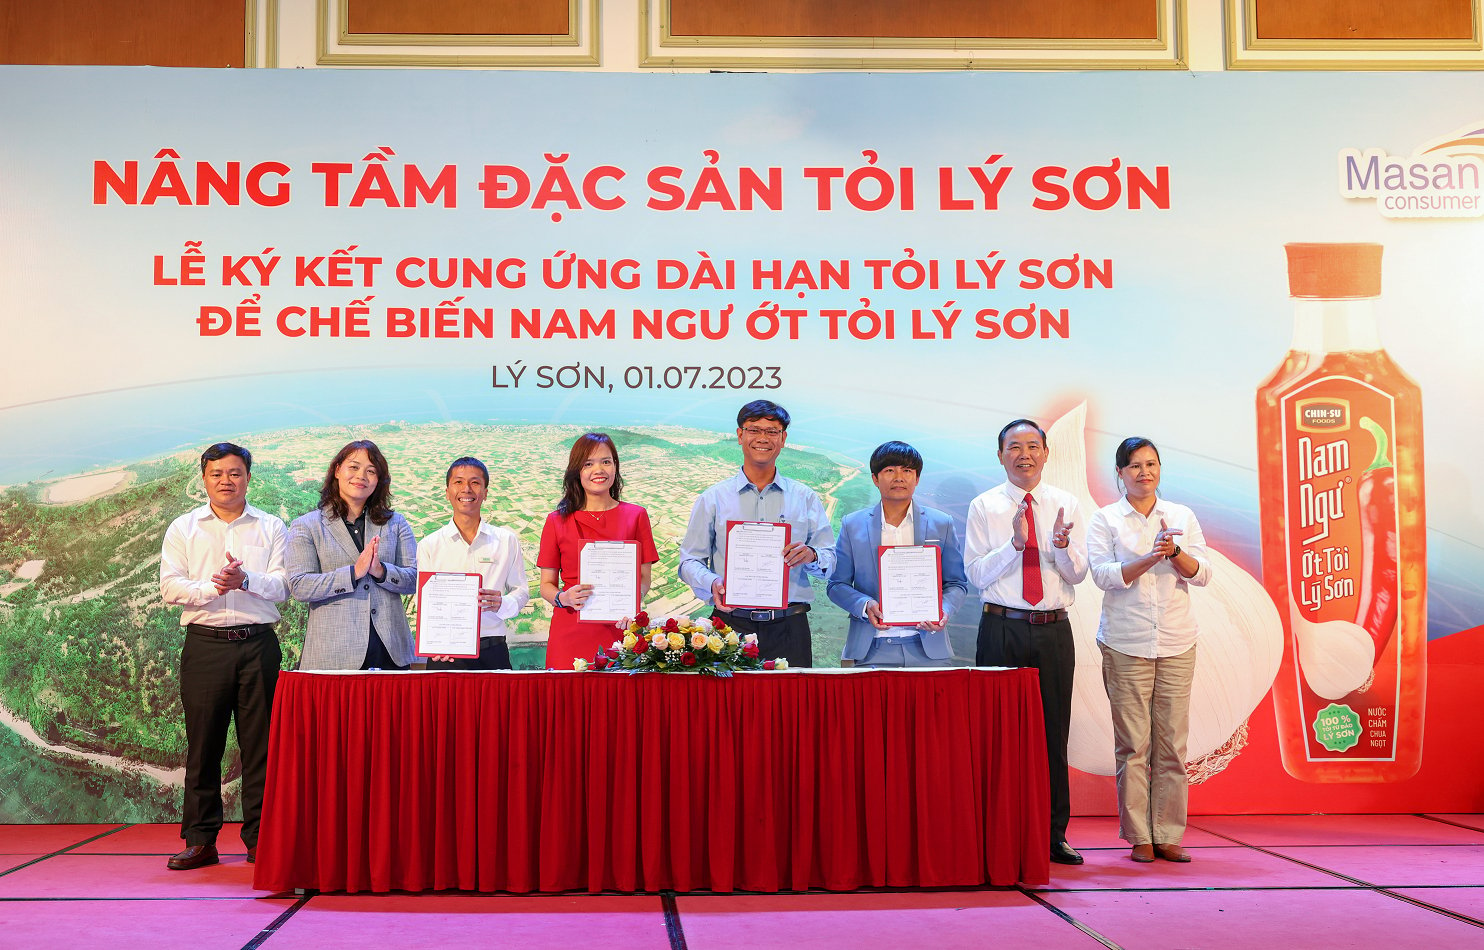 Lễ Ký kết diễn ra dưới sự chứng kiến của lãnh đạo Bộ NN-PTNTvà tỉnh Quảng Ngãi. Ảnh: M.Vân.